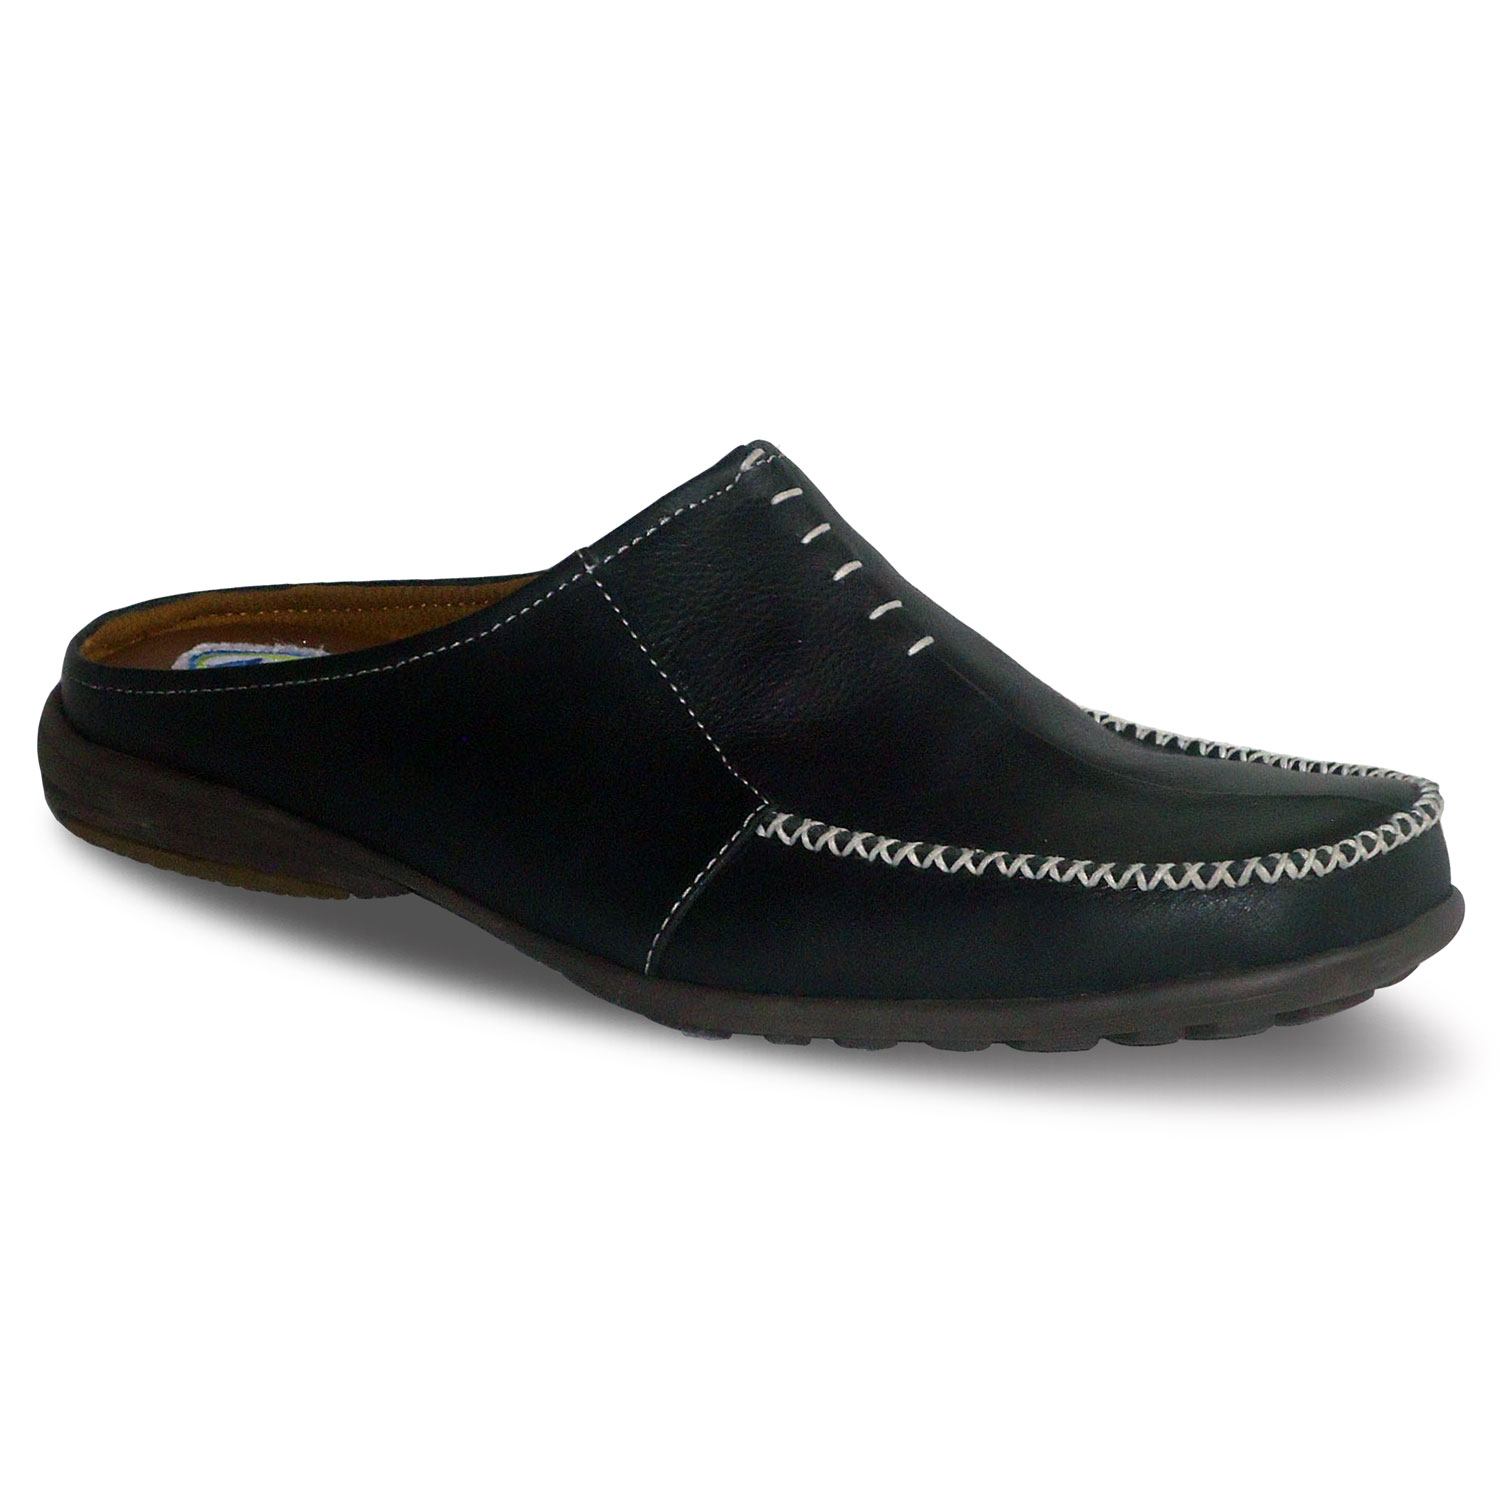 sepatu kulit pria casual C12 black - atmal